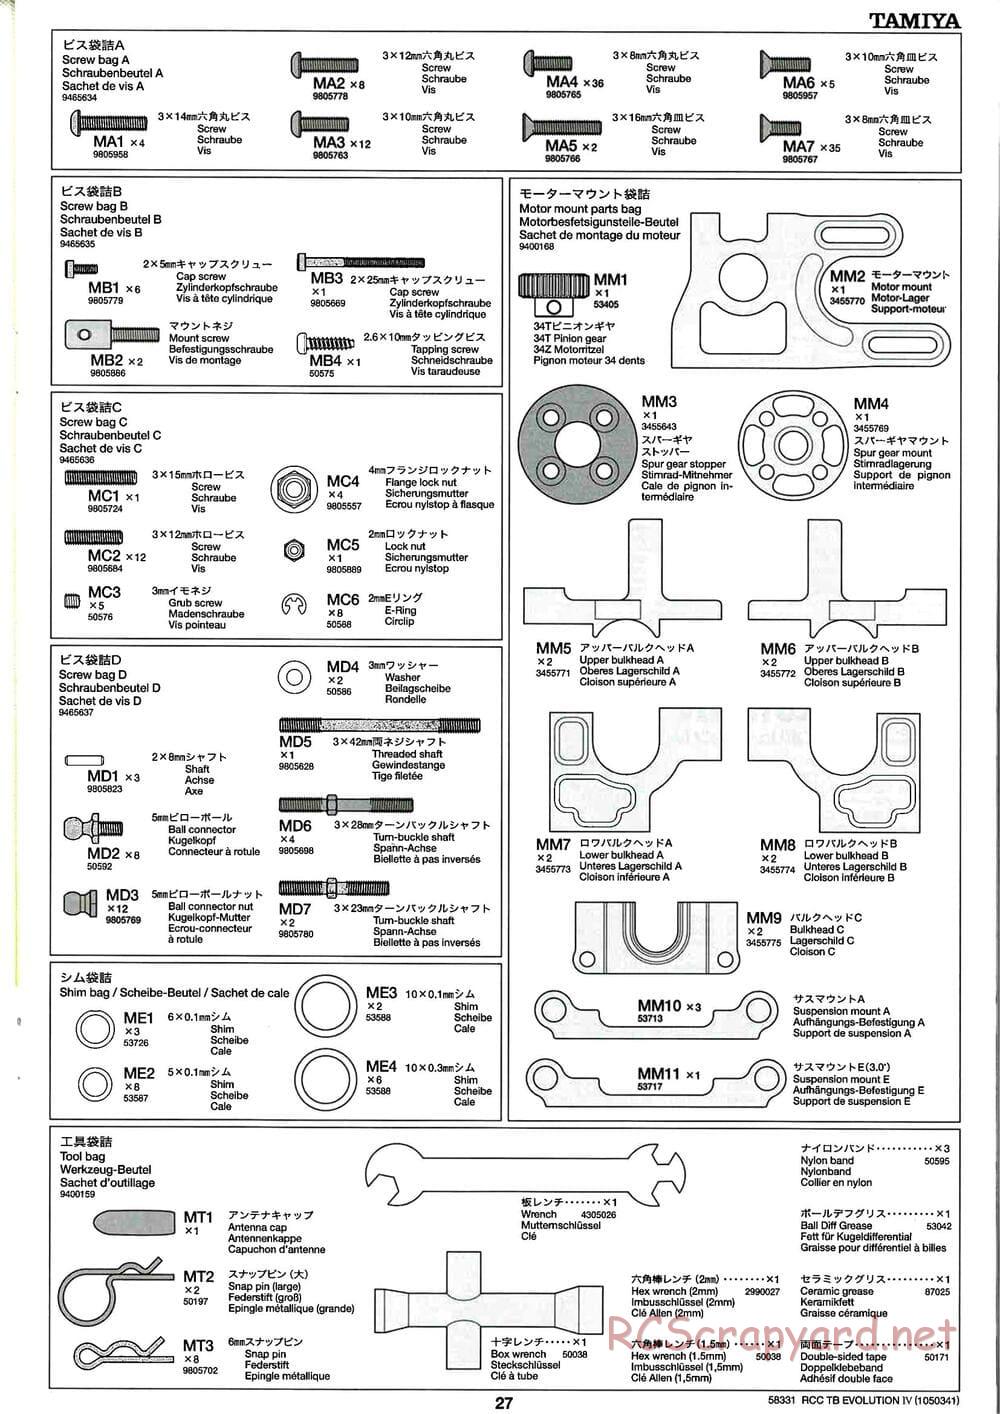 Tamiya - TB Evolution IV Chassis - Manual - Page 27